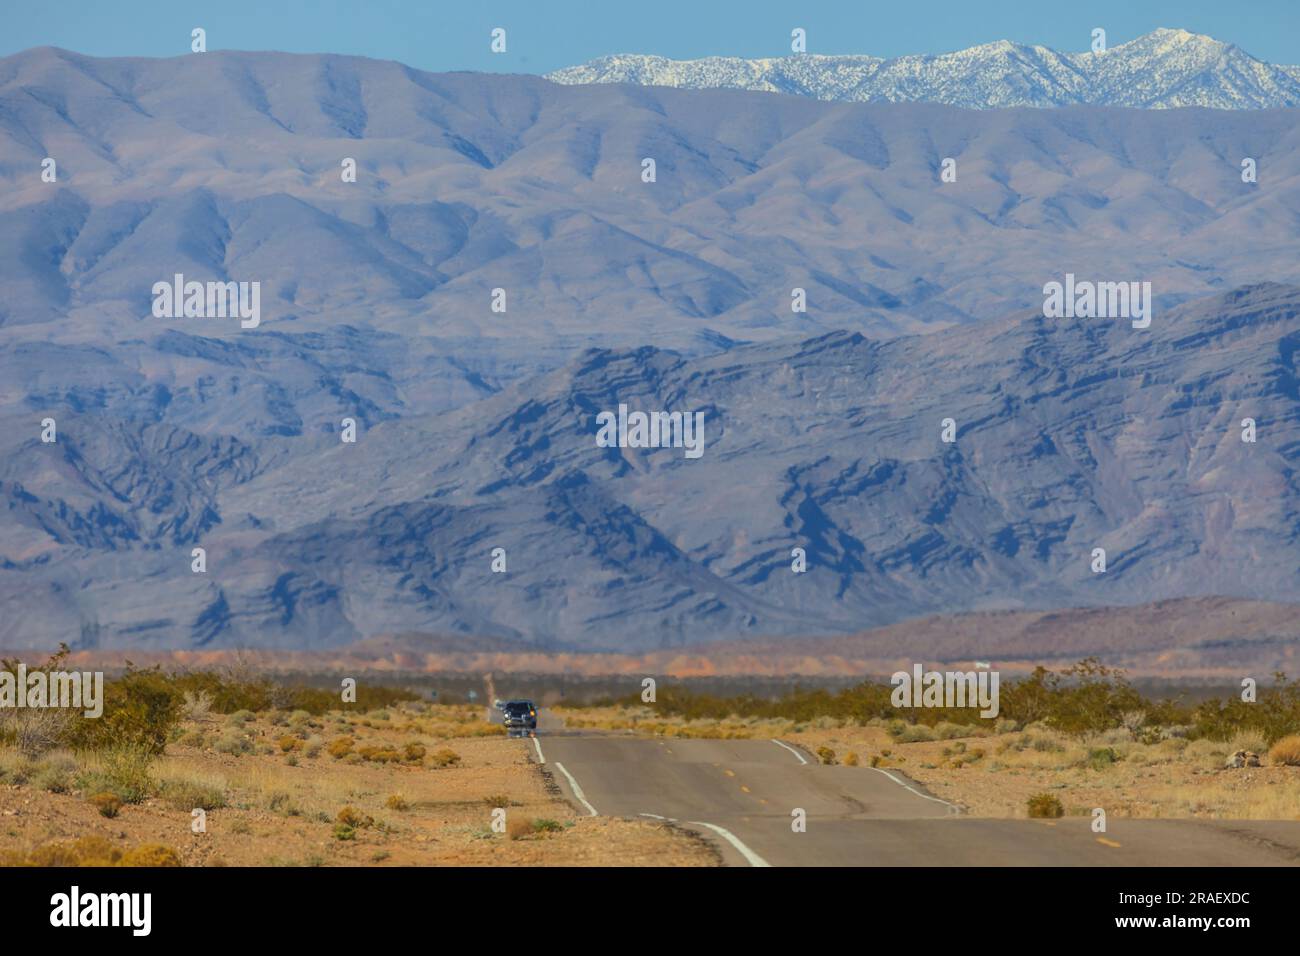 Teleaufnahme einer Strasse durch die Wüste von Arizona mit beeindruckendem Gebirgszug und schneebedeckten Gipfeln im Hintergrund fotografiert in den U Stock Photo